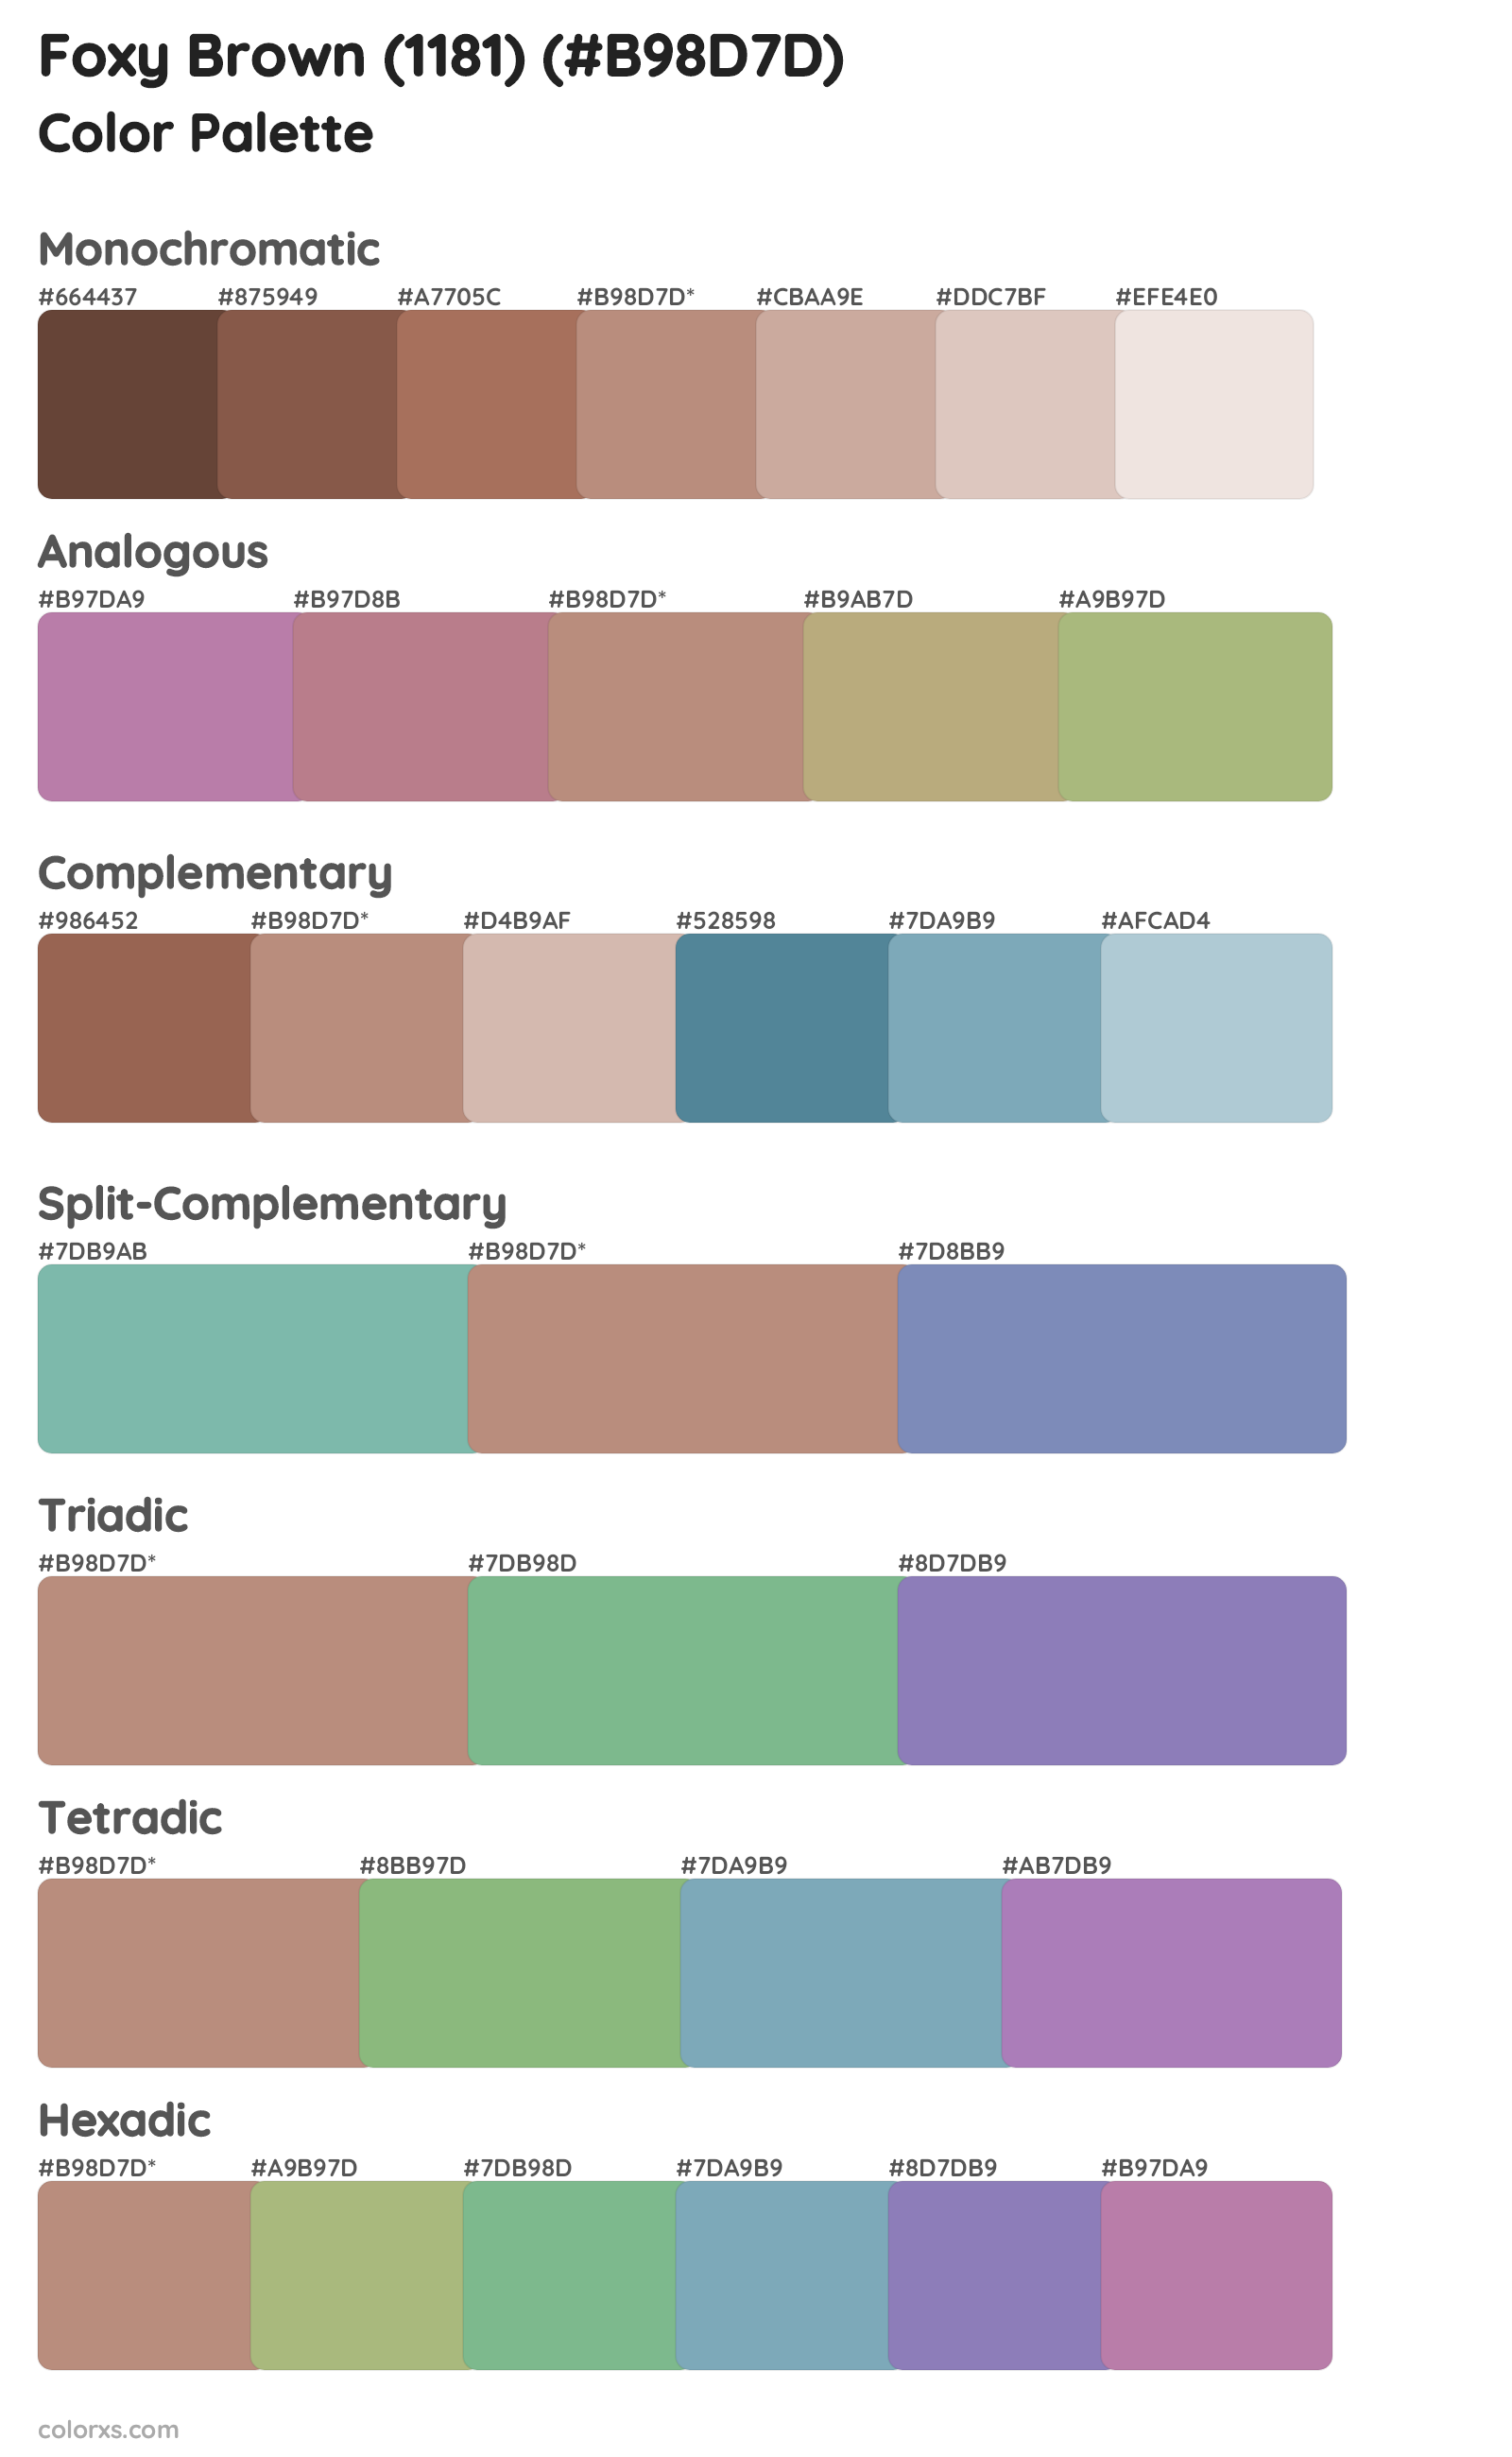 Foxy Brown (1181) Color Scheme Palettes